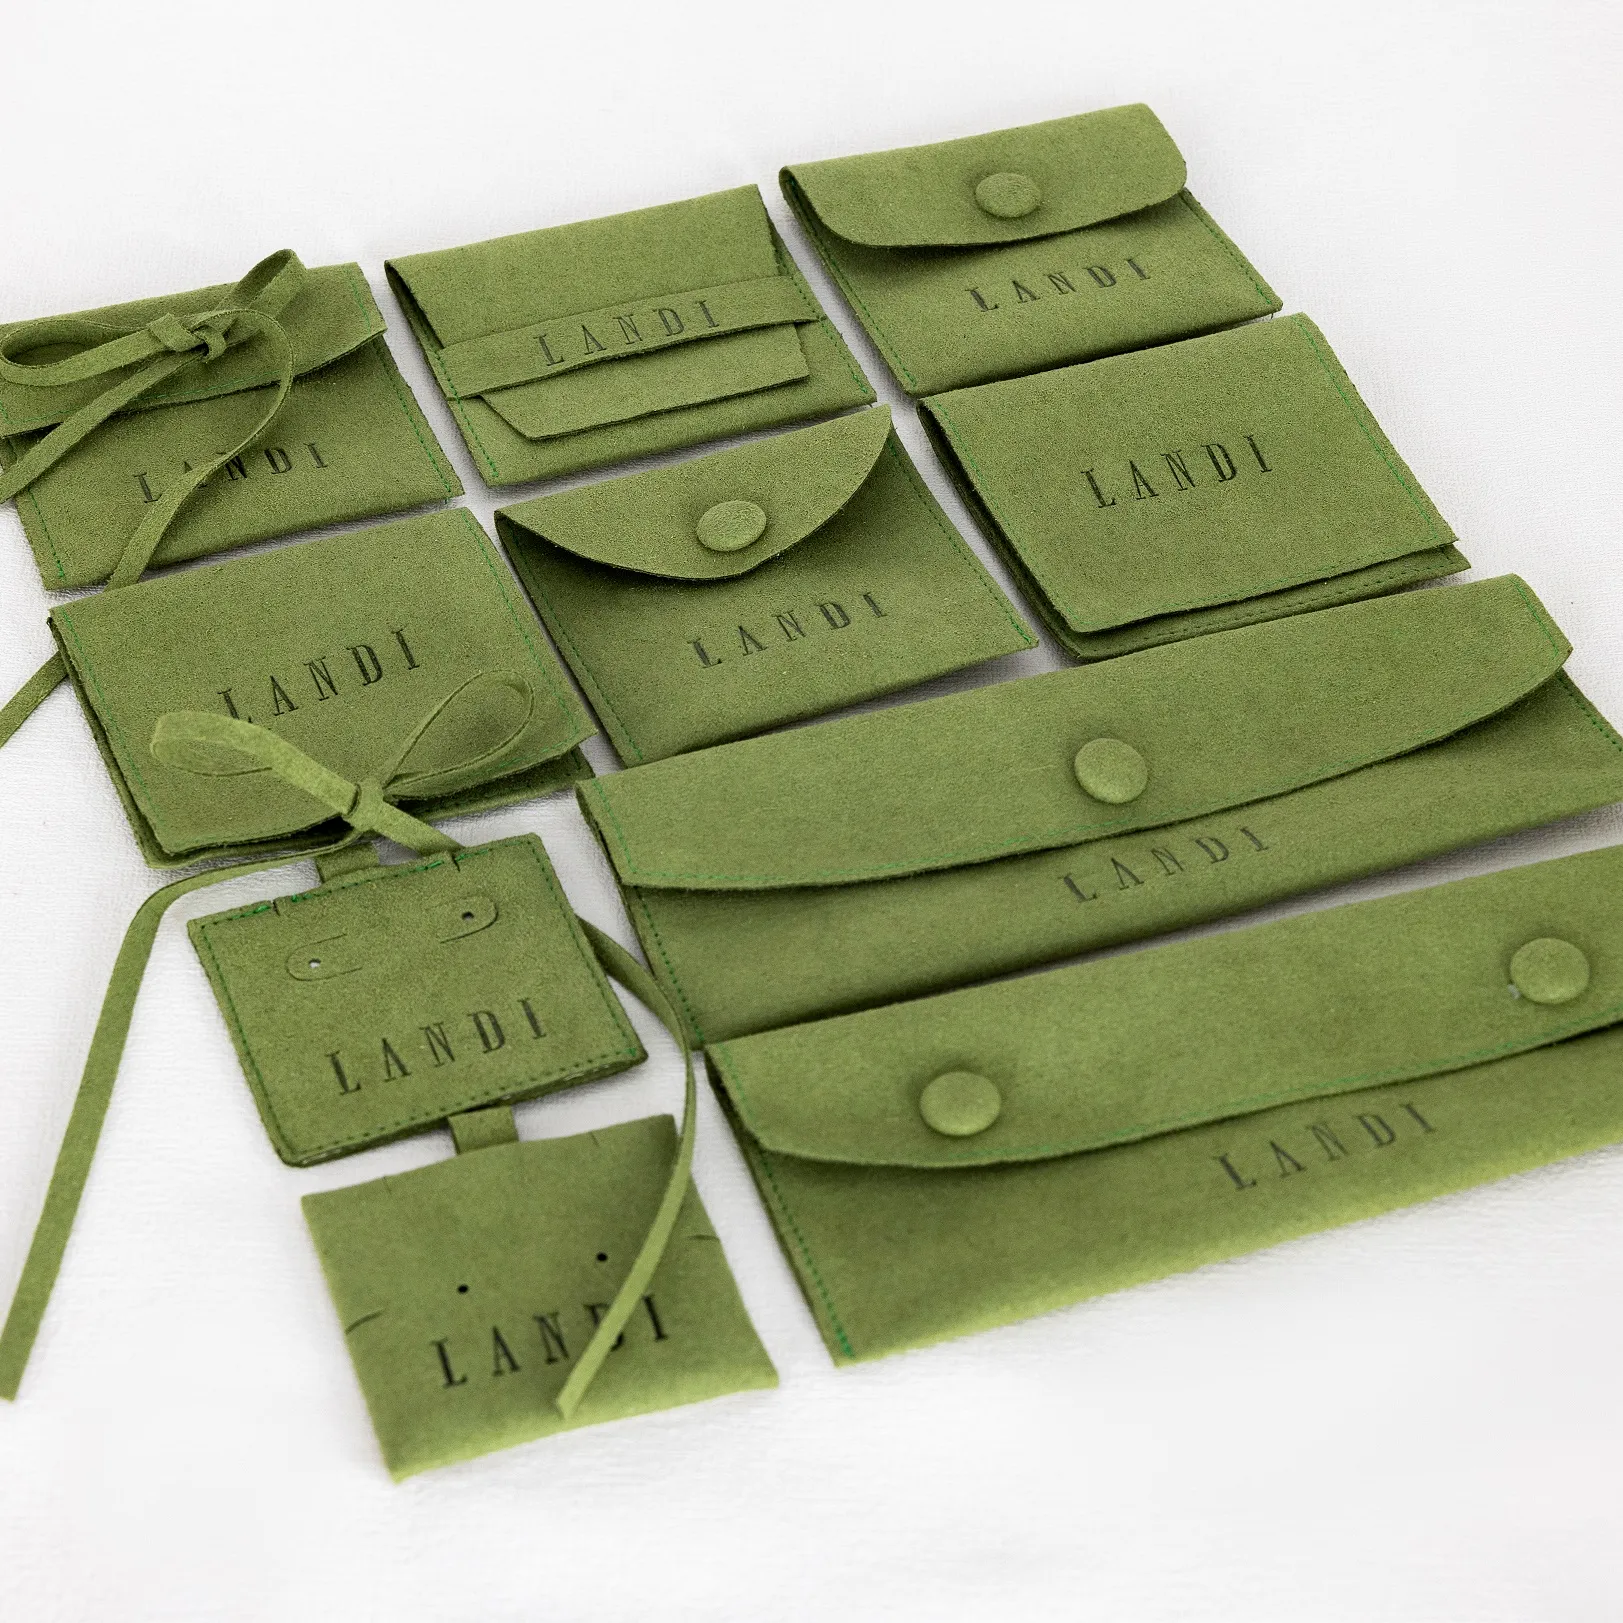 Directo de fábrica de gamuza microfibra verde gafas de sol bolsa joyería embalaje personalizado exhibición de joyería Faux Suede sobres bolsas